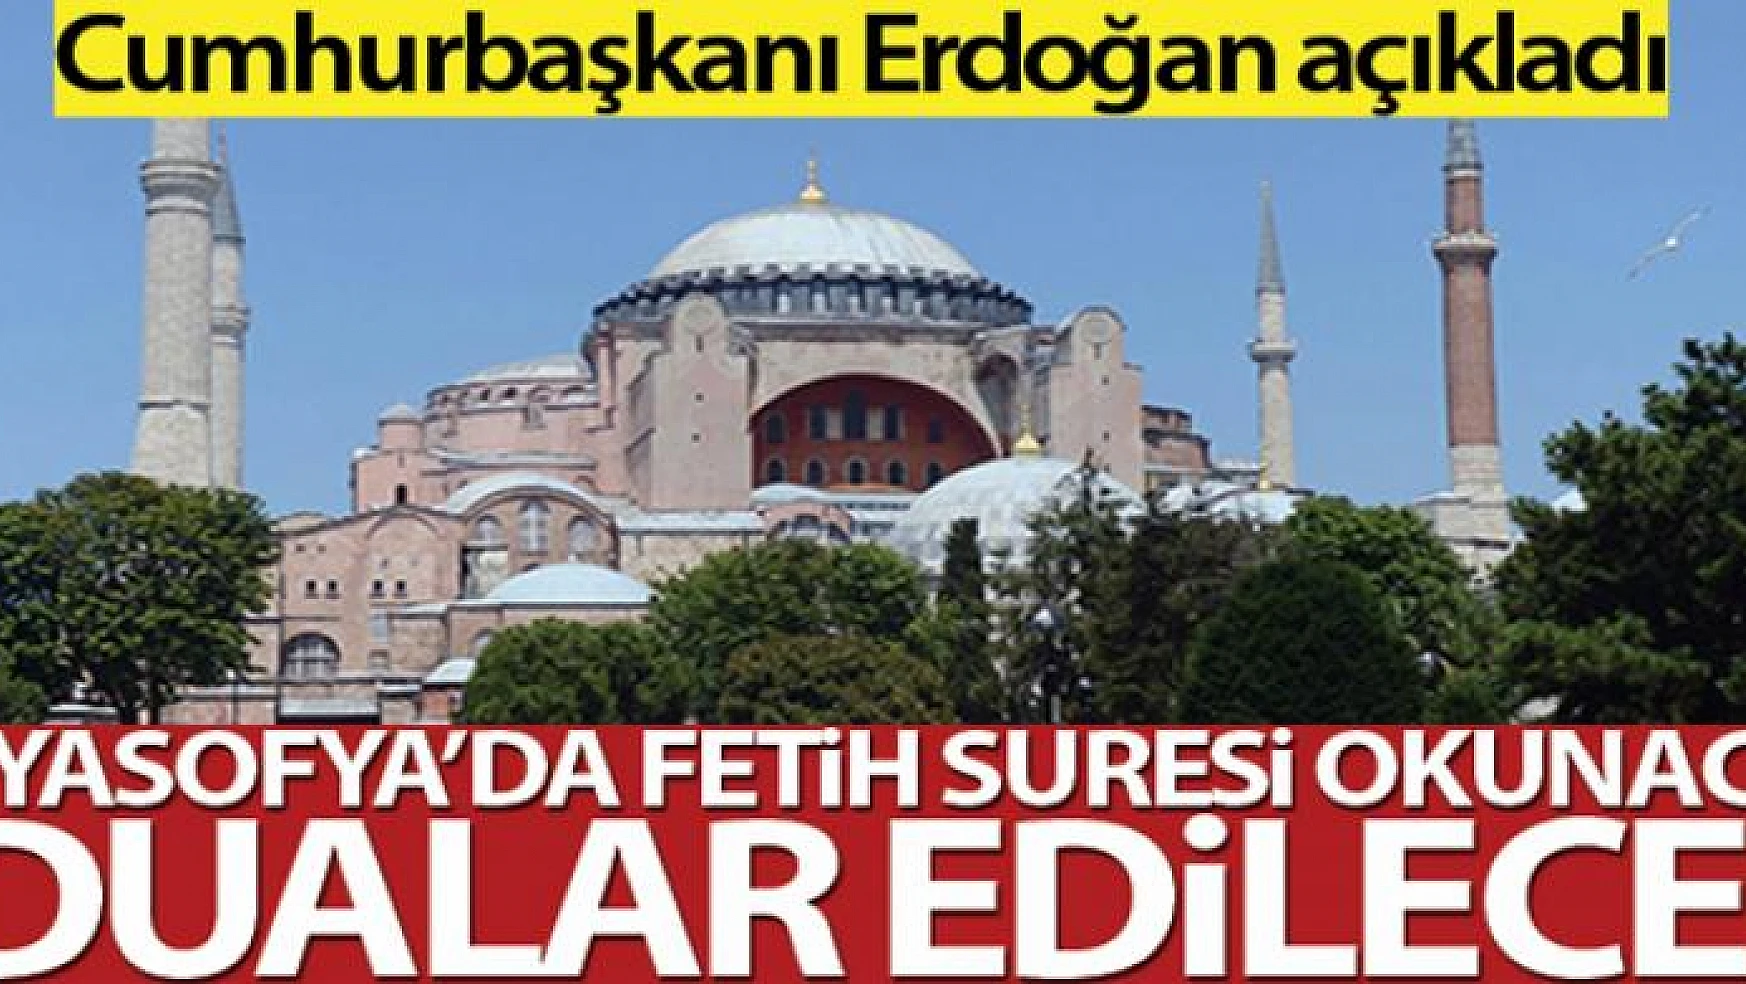 Cumhurbaşkanı Erdoğan: 'Ayasofya'da Fetih Suresi okunacak'